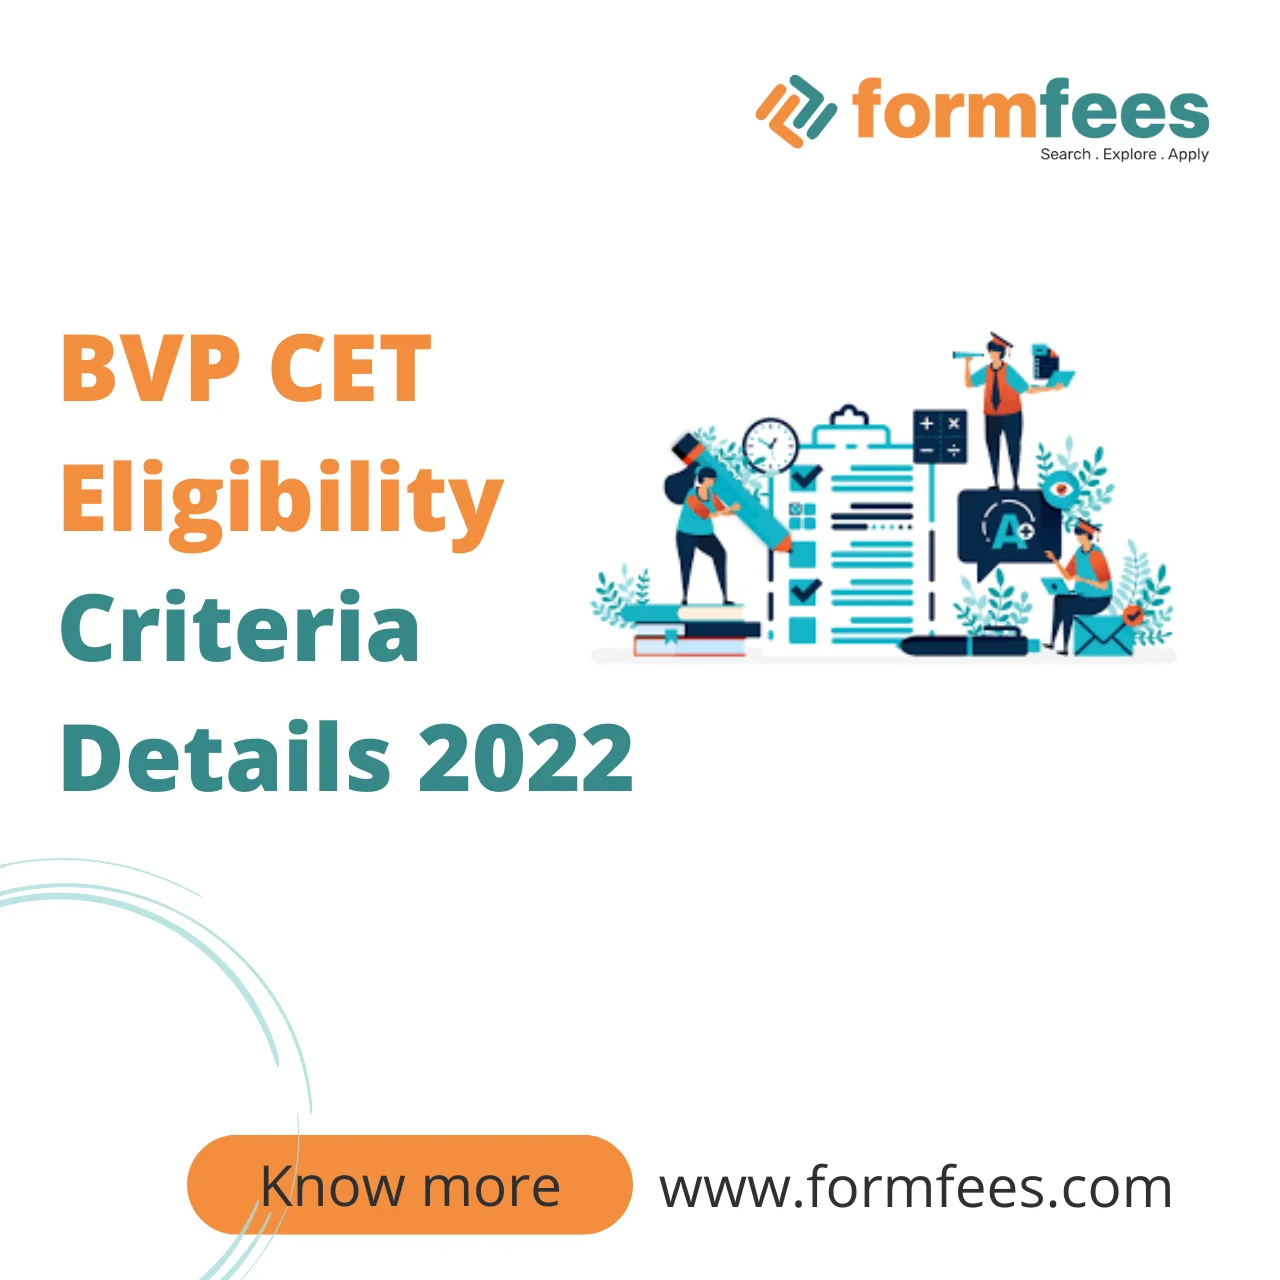 BVP CET Eligibility Criteria Details 2022